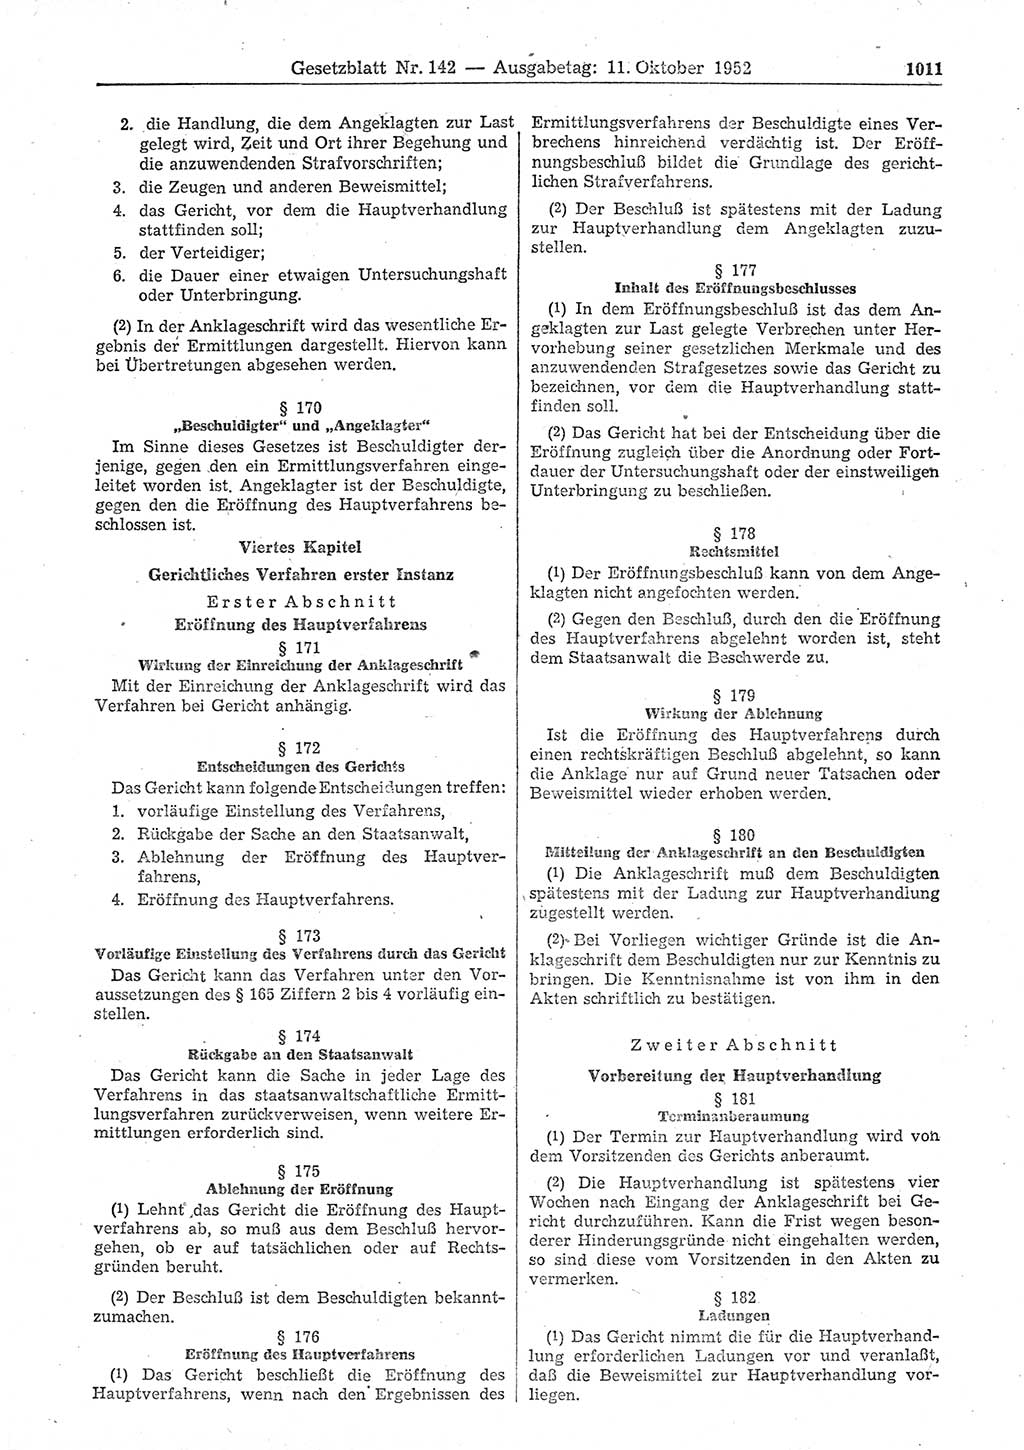 Gesetzblatt (GBl.) der Deutschen Demokratischen Republik (DDR) 1952, Seite 1011 (GBl. DDR 1952, S. 1011)